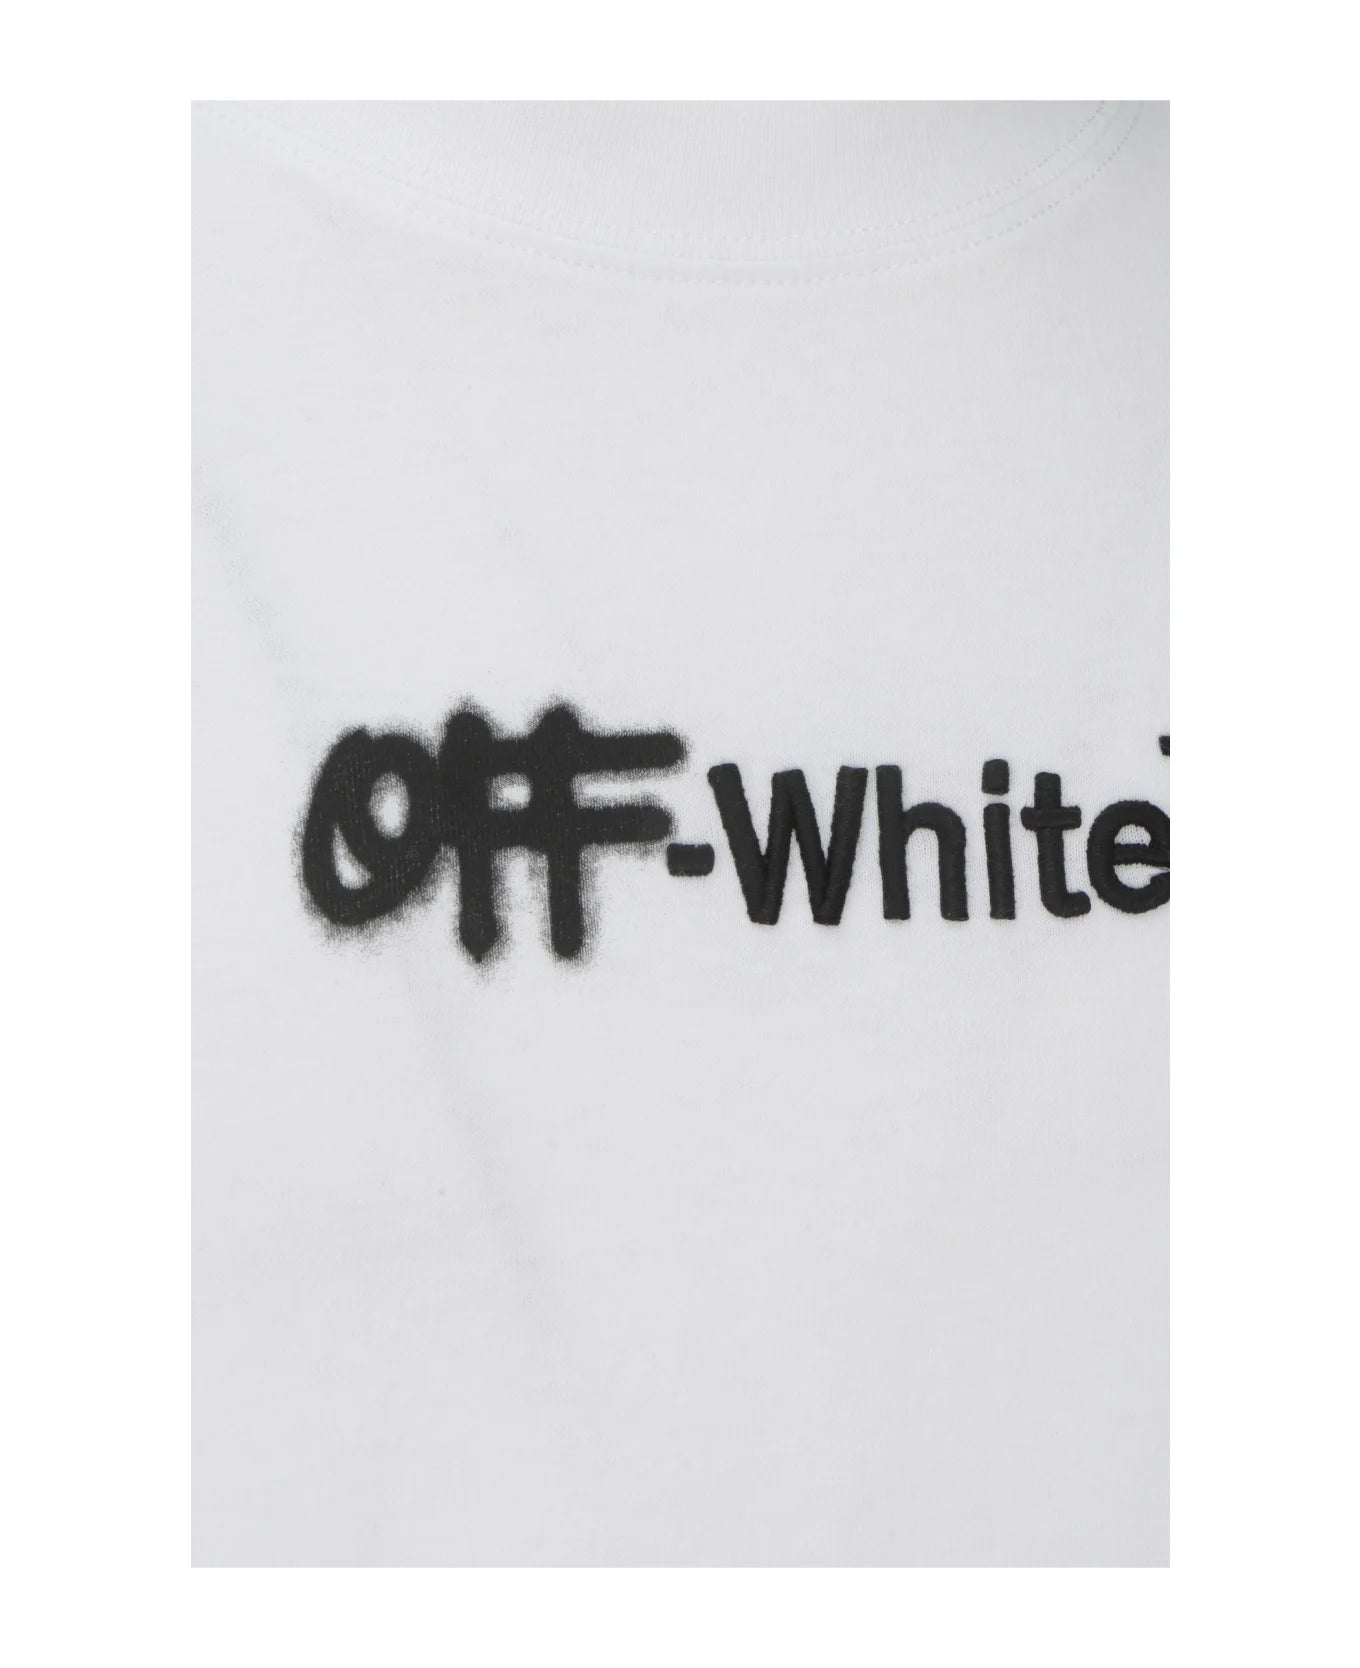 Off White T-shirt